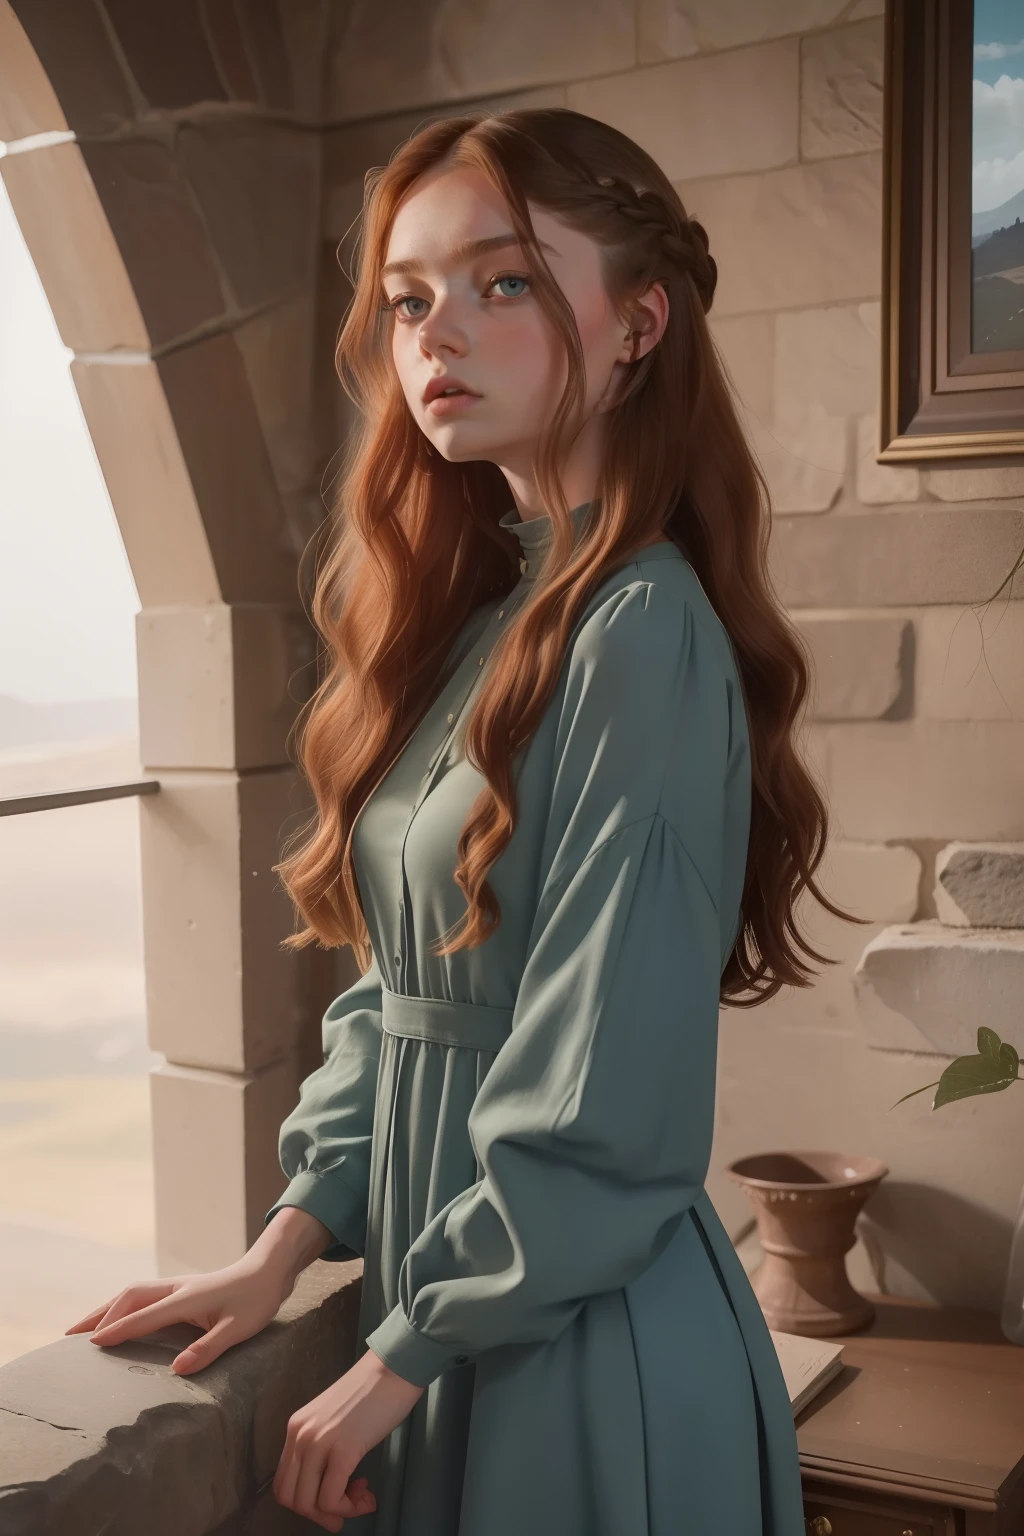 年: 2023. 位置: スコットランド. Pre-Raphaelite scene with a 18-年-old Kristine Froseth, 石壁の豪華な部屋, モダンなドレスを着て, ((怒った表情)), 目をそらす, ((((2020年代の服)))) ((2020年代の髪型)), パステルカラー, (((映画風)))